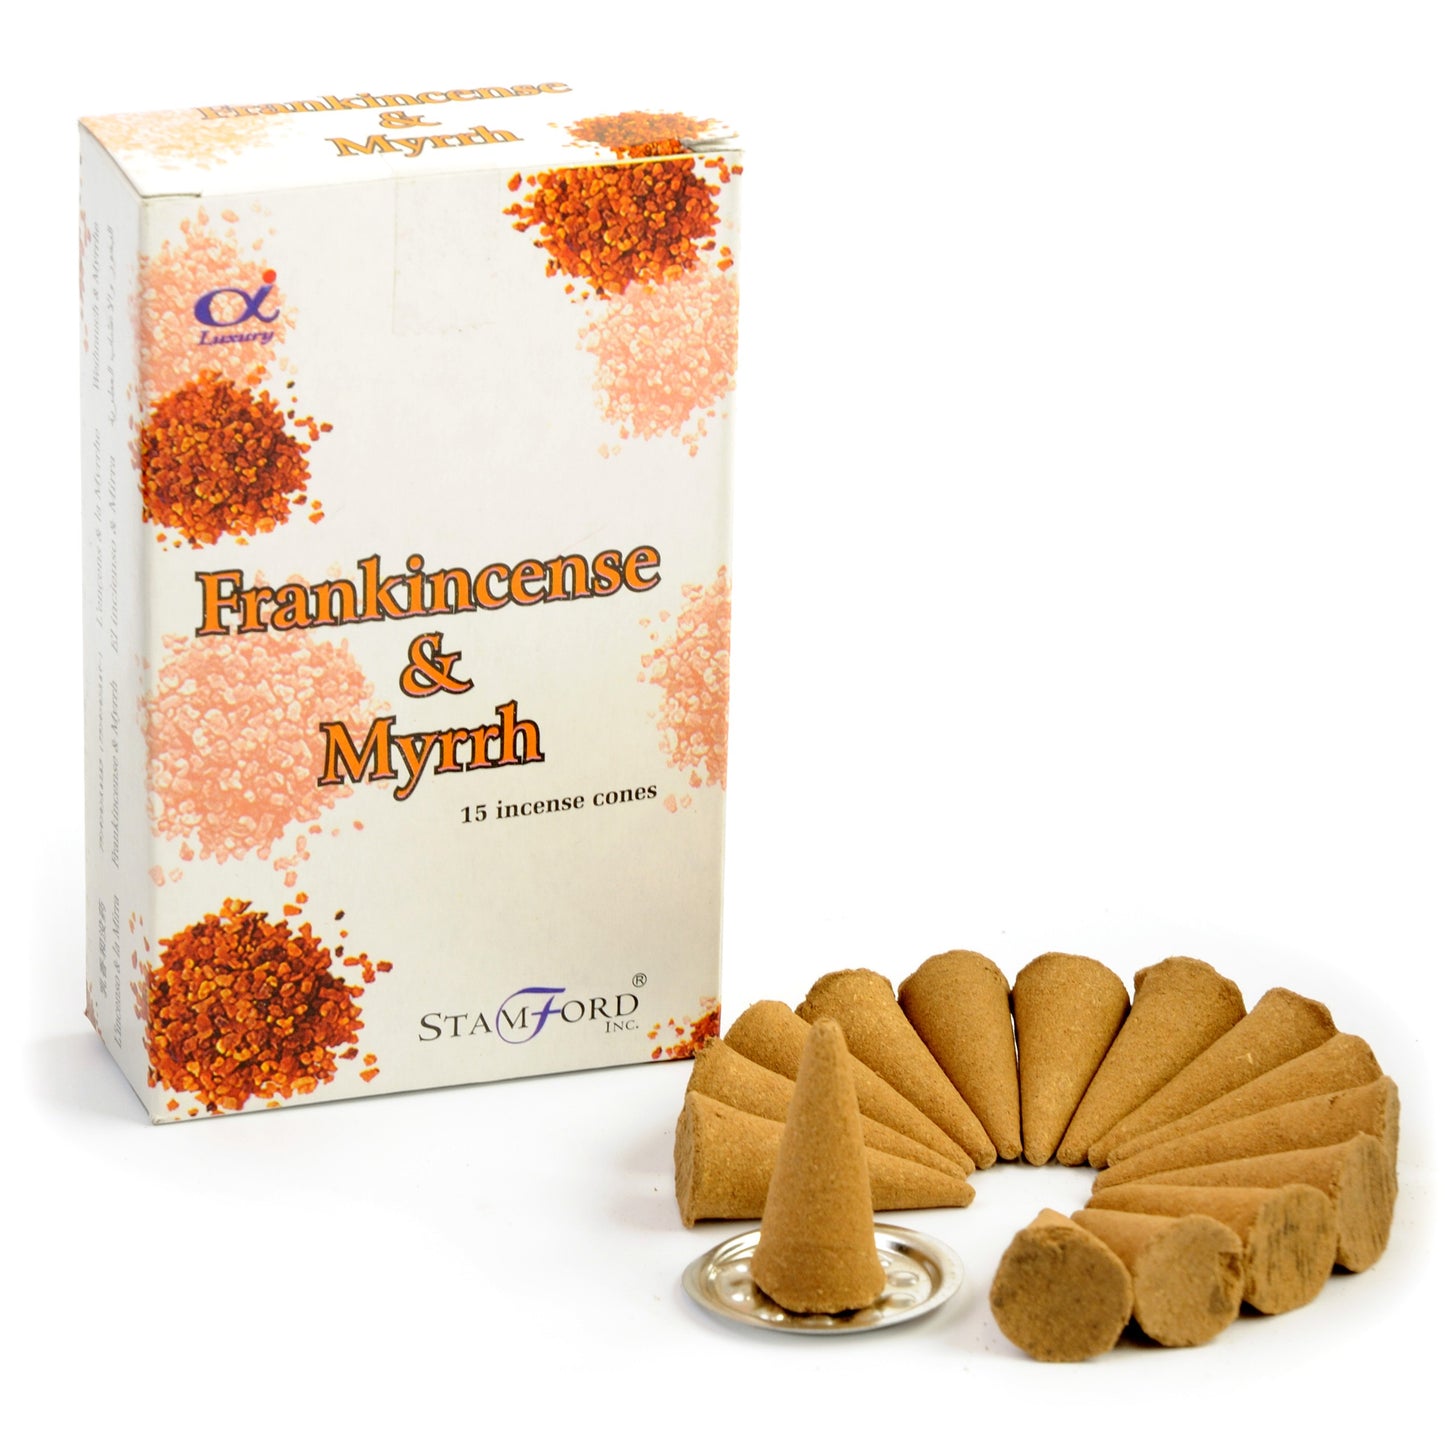 Stamford Incense Cones - Frankincense & Myrrh